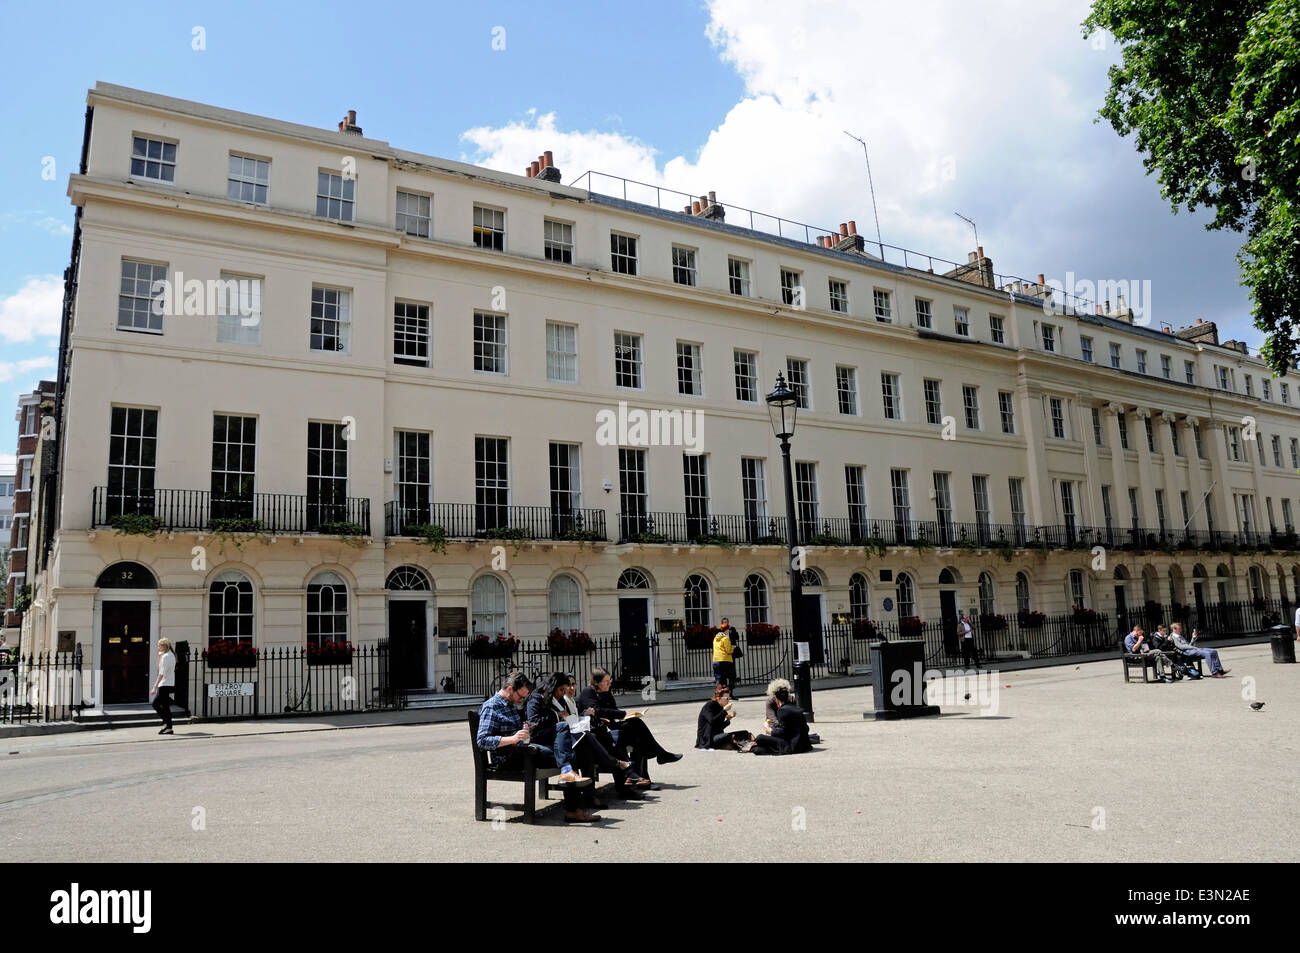 Des gens assis sur des bancs de manger le déjeuner à Fitzroy Square, Bloomsbury Londres Angleterre Royaume-uni Banque D'Images